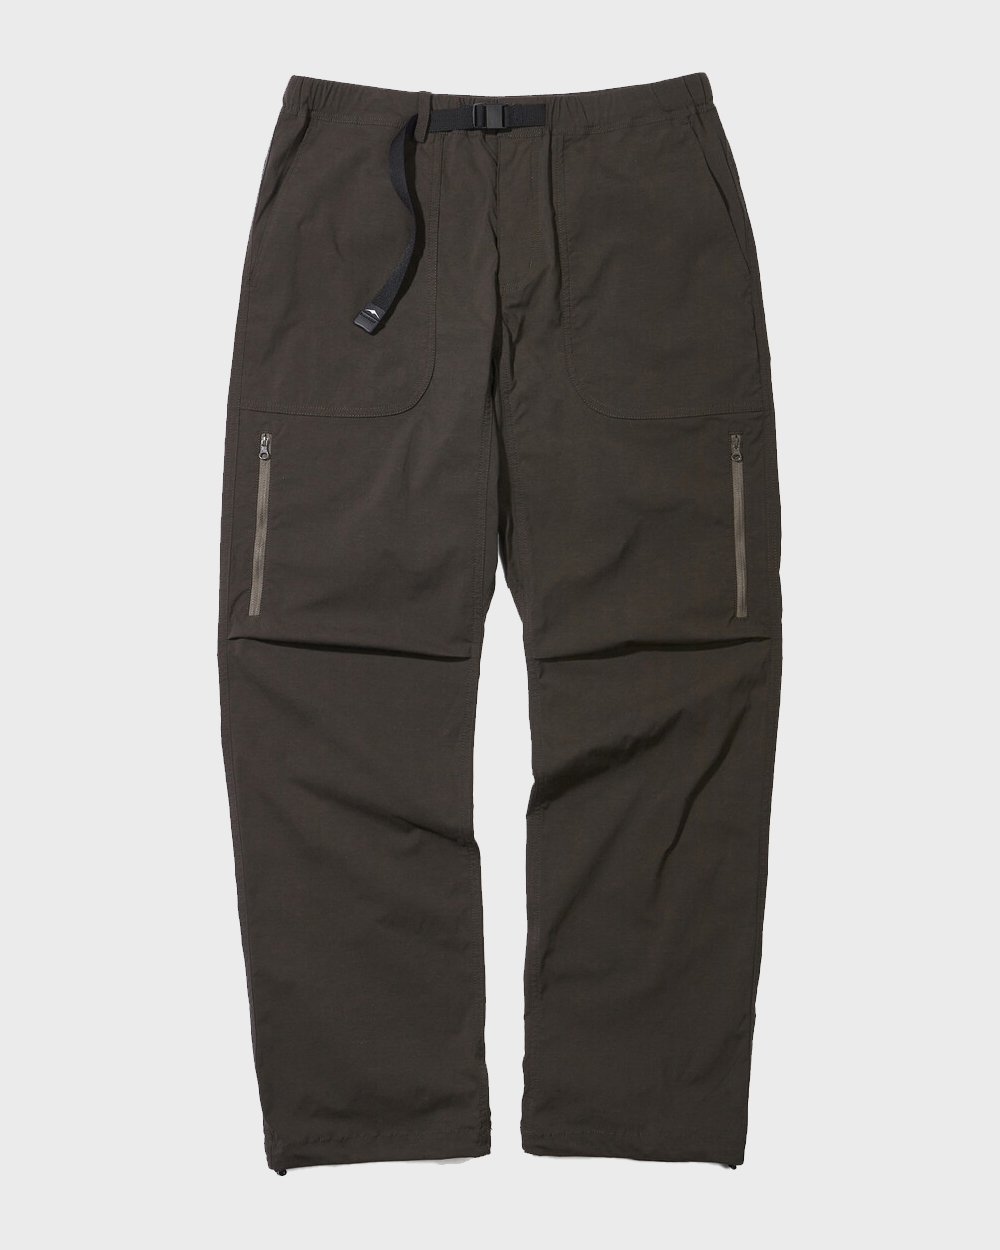 Trail Pants 2.0 (Brown)